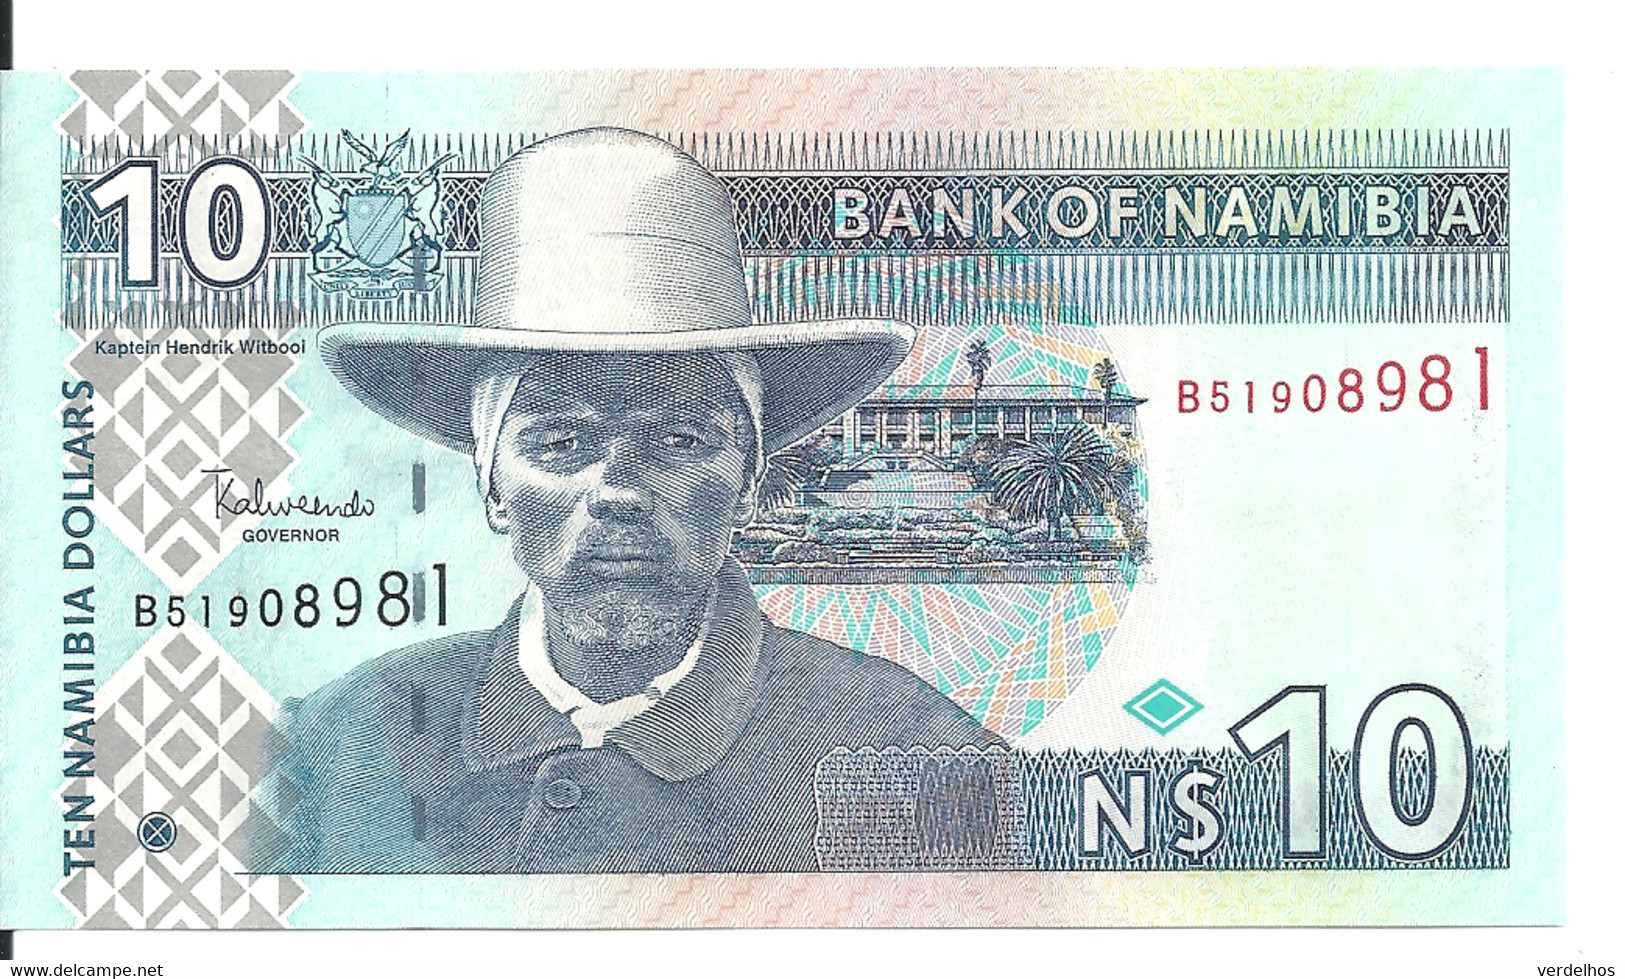 NAMIBIE 10 NAMIBIA DOLLARS ND2009 UNC P 4 C - Namibië